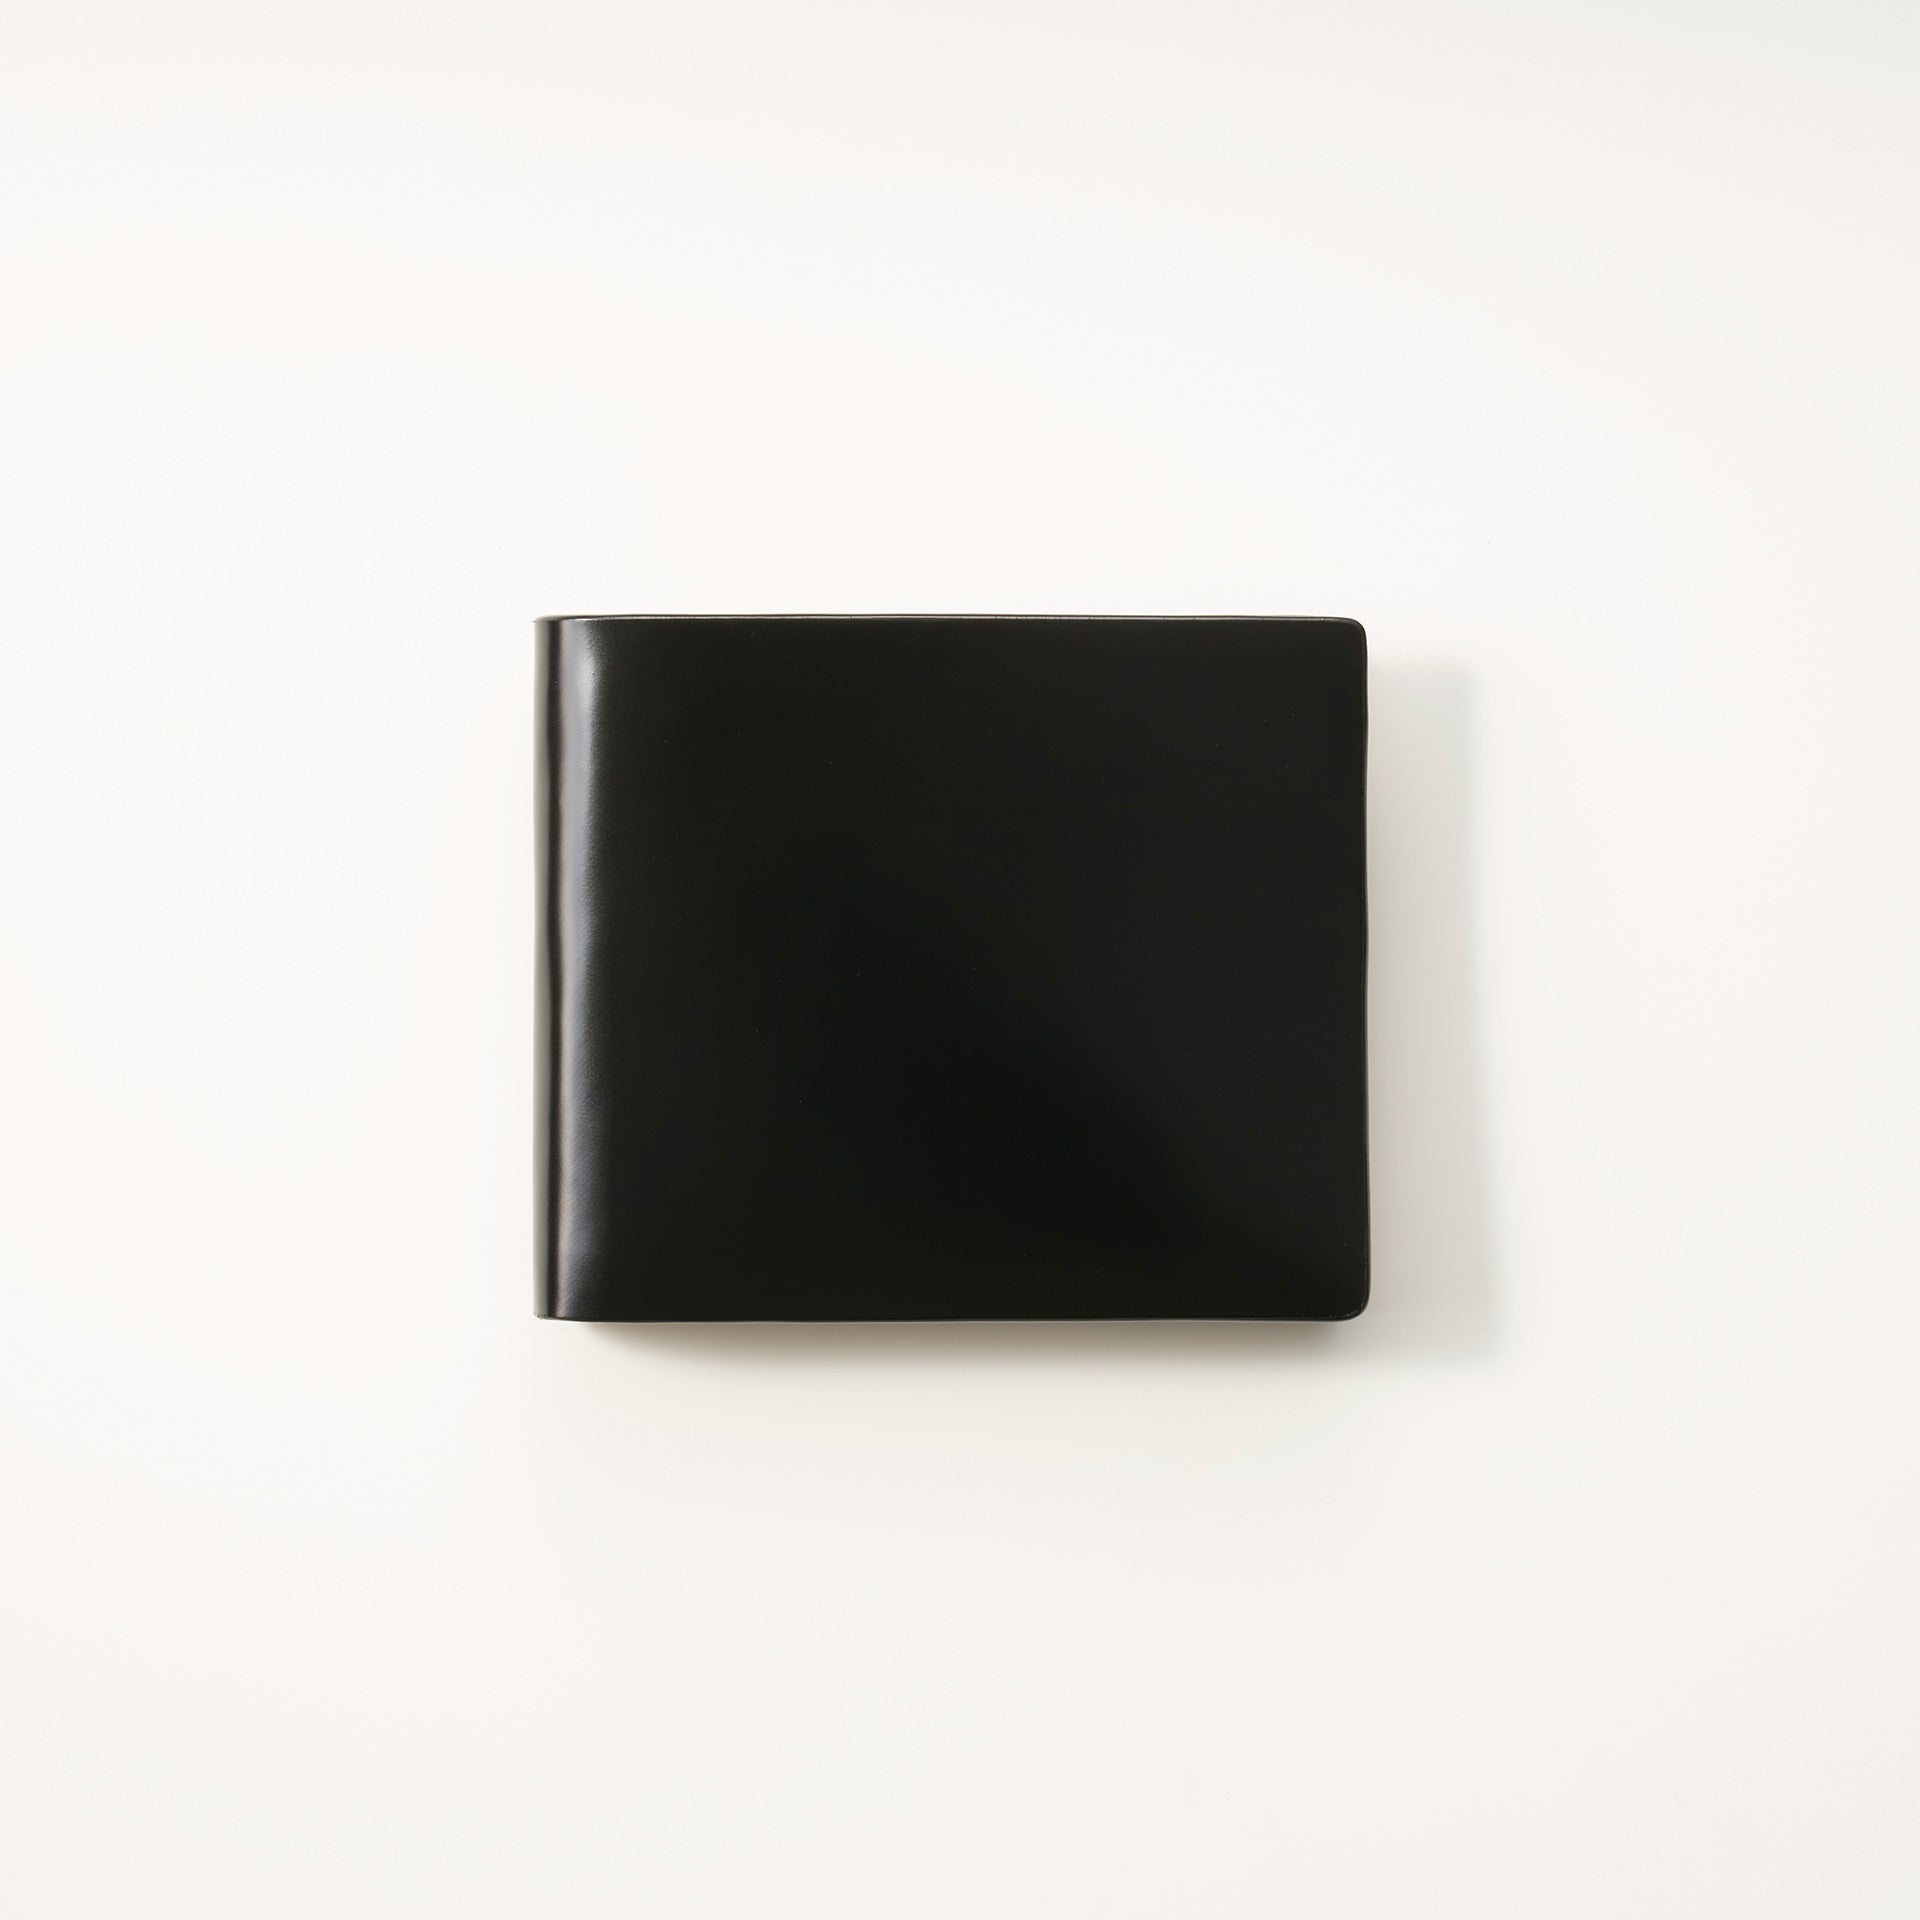 二つ折り財布 – アトリエ・ヒロ 公式オンラインショップ